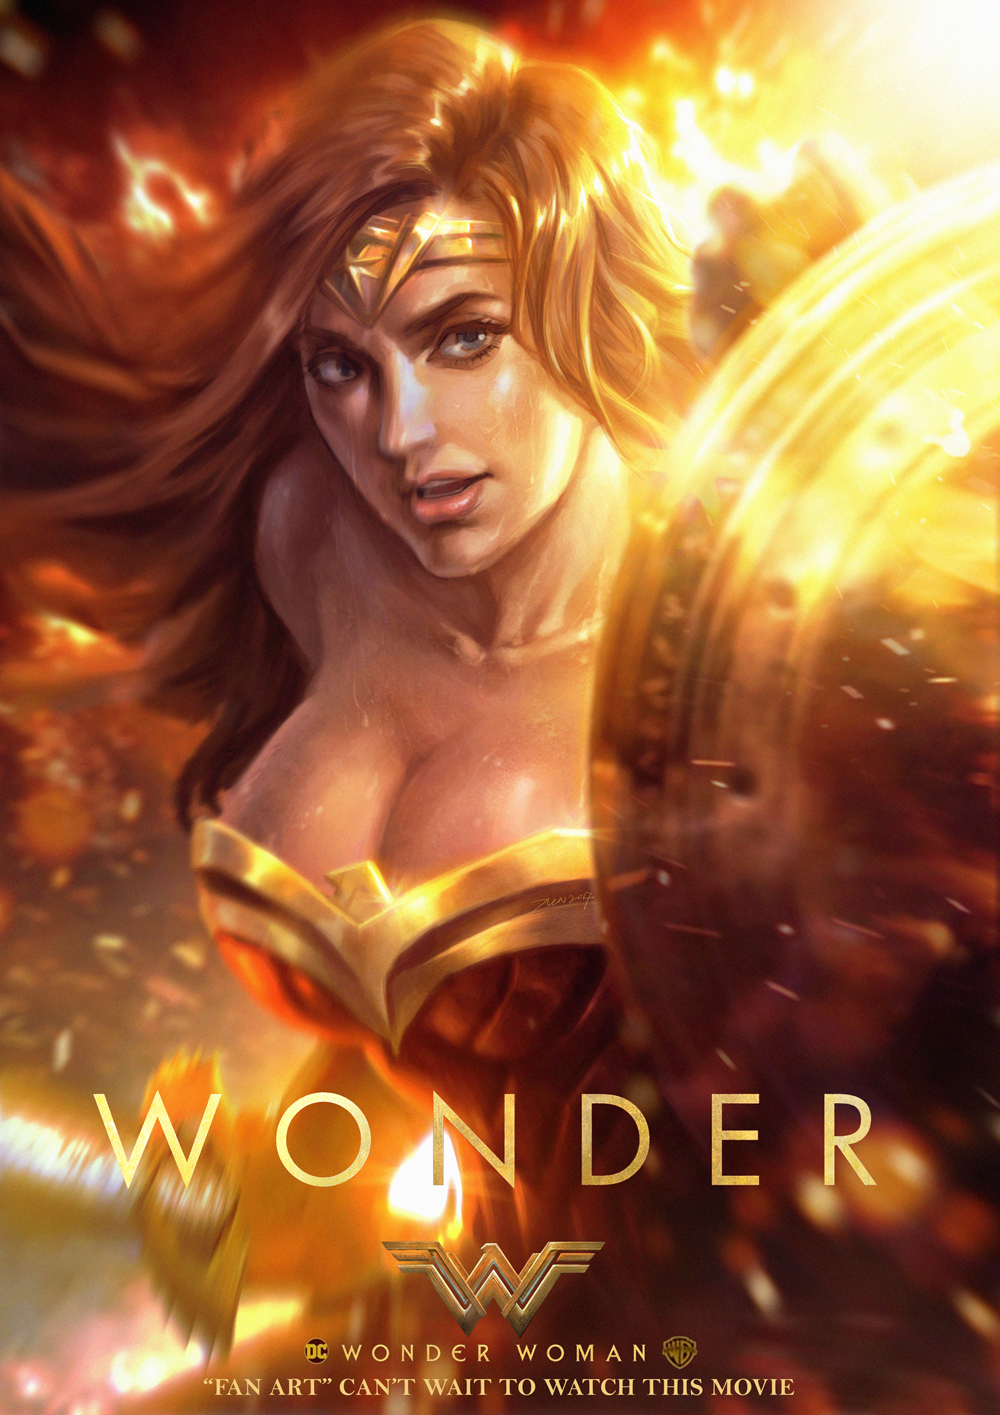 wonder woman DC comic SuperHero fire shield Sword battle fight Character Fan art poster